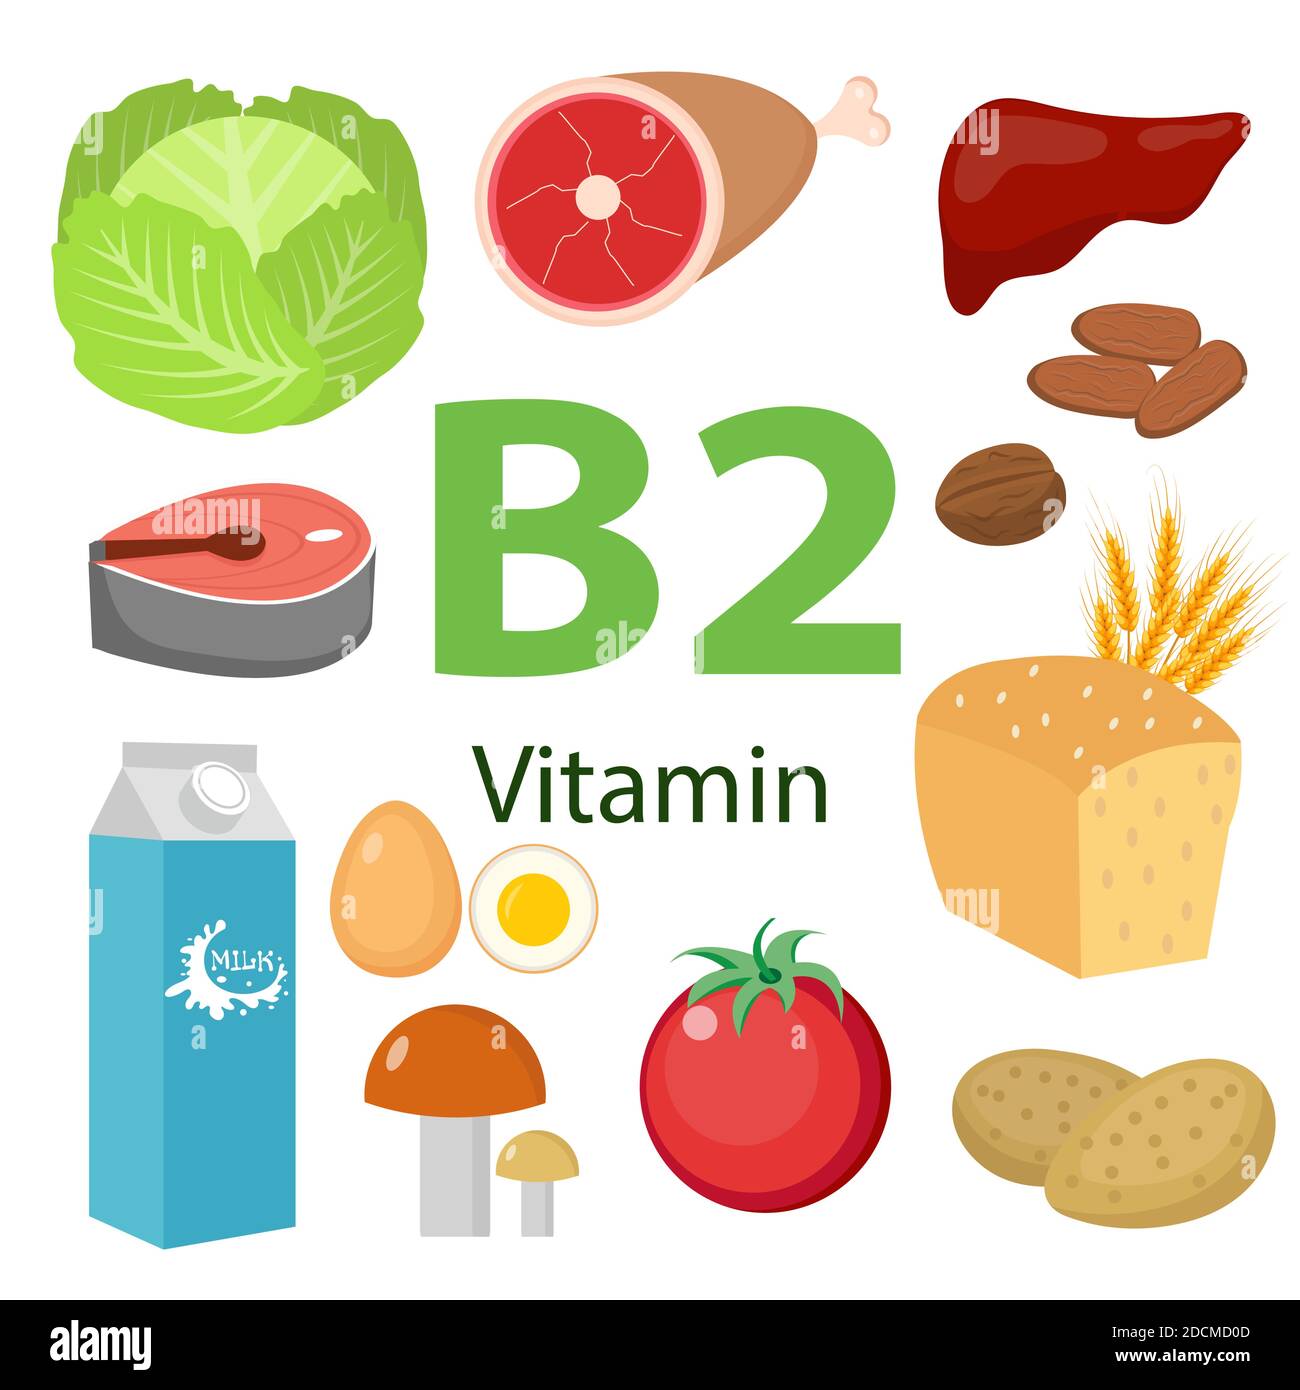 Vitamine und Mineralstoffe Lebensmittel Illustrator-Set 7.Vector Satz von vitaminreichen Lebensmitteln. Vitamin B2-Milch, Ei, Spinat, Austern, Käse, Leber, Pilze und Stock Vektor